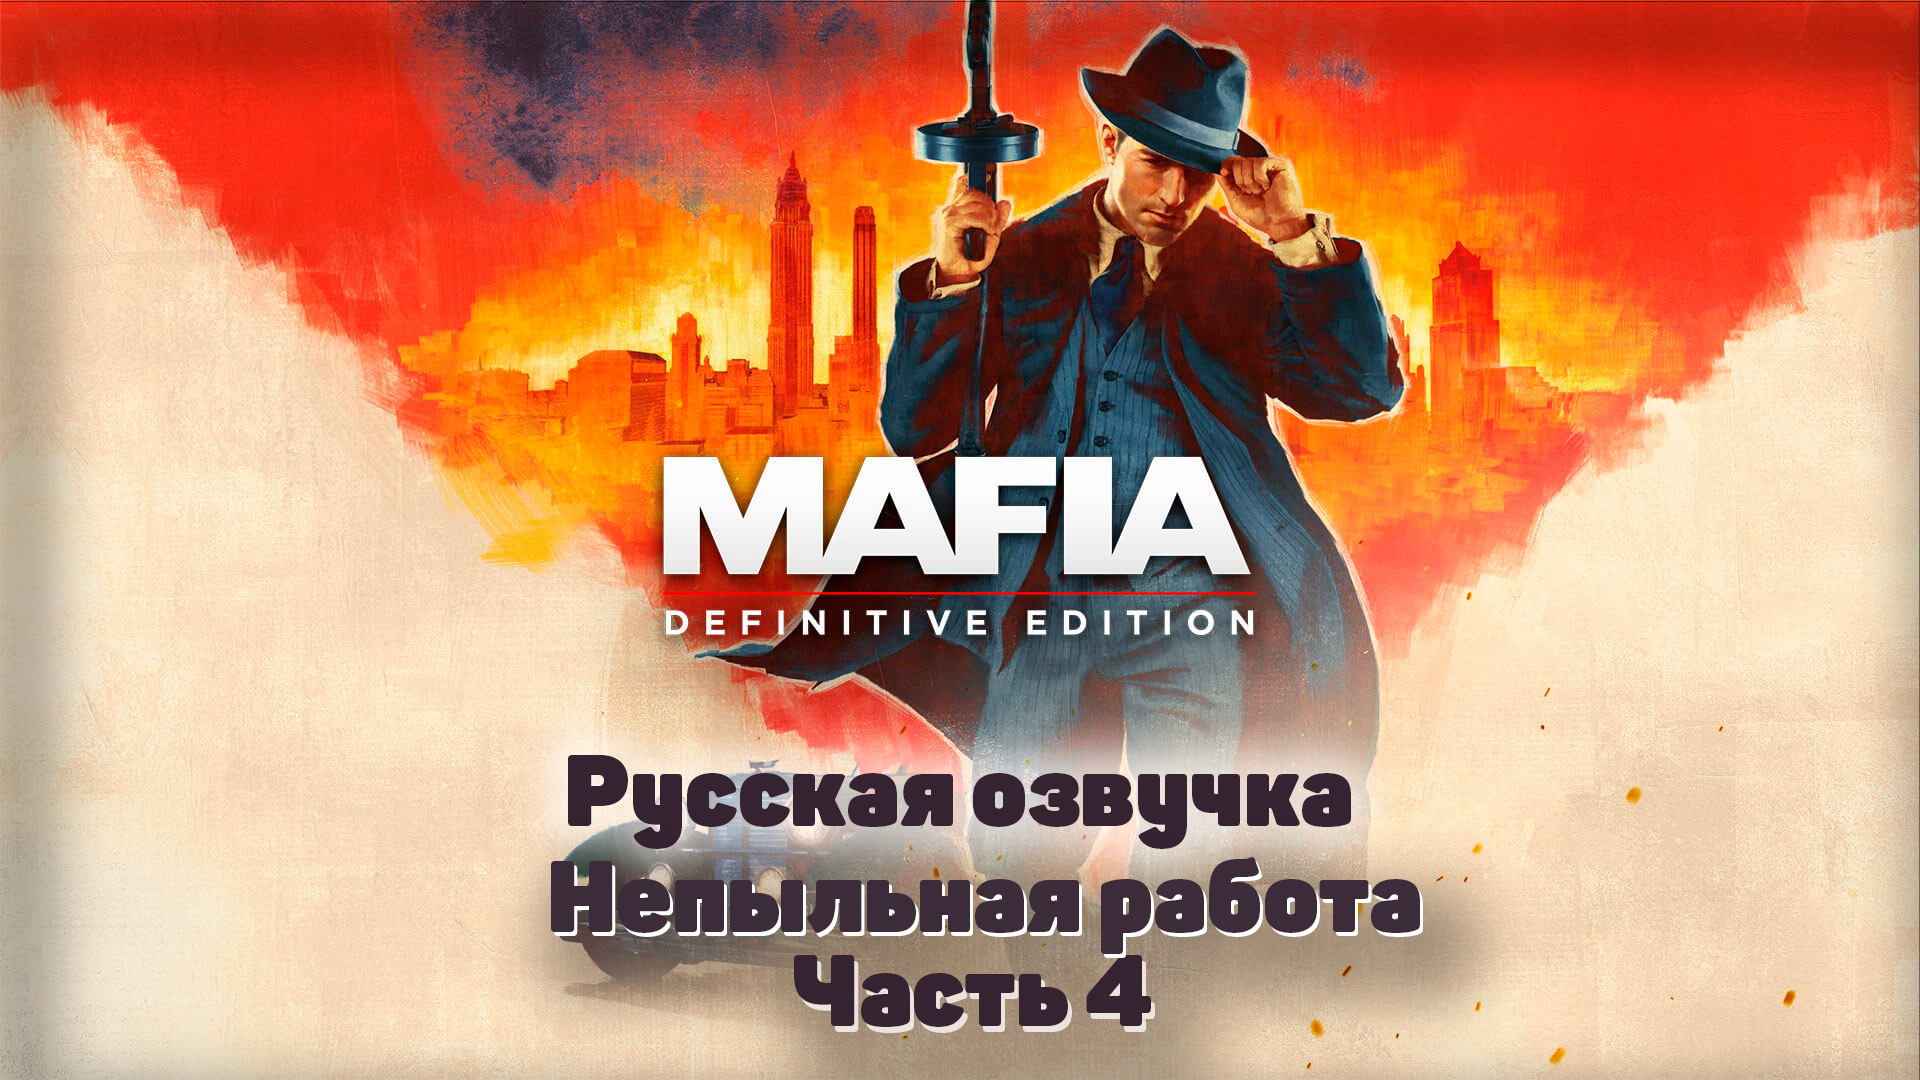 Mafia: Definitive Edition  Часть 4 Непыльная работа